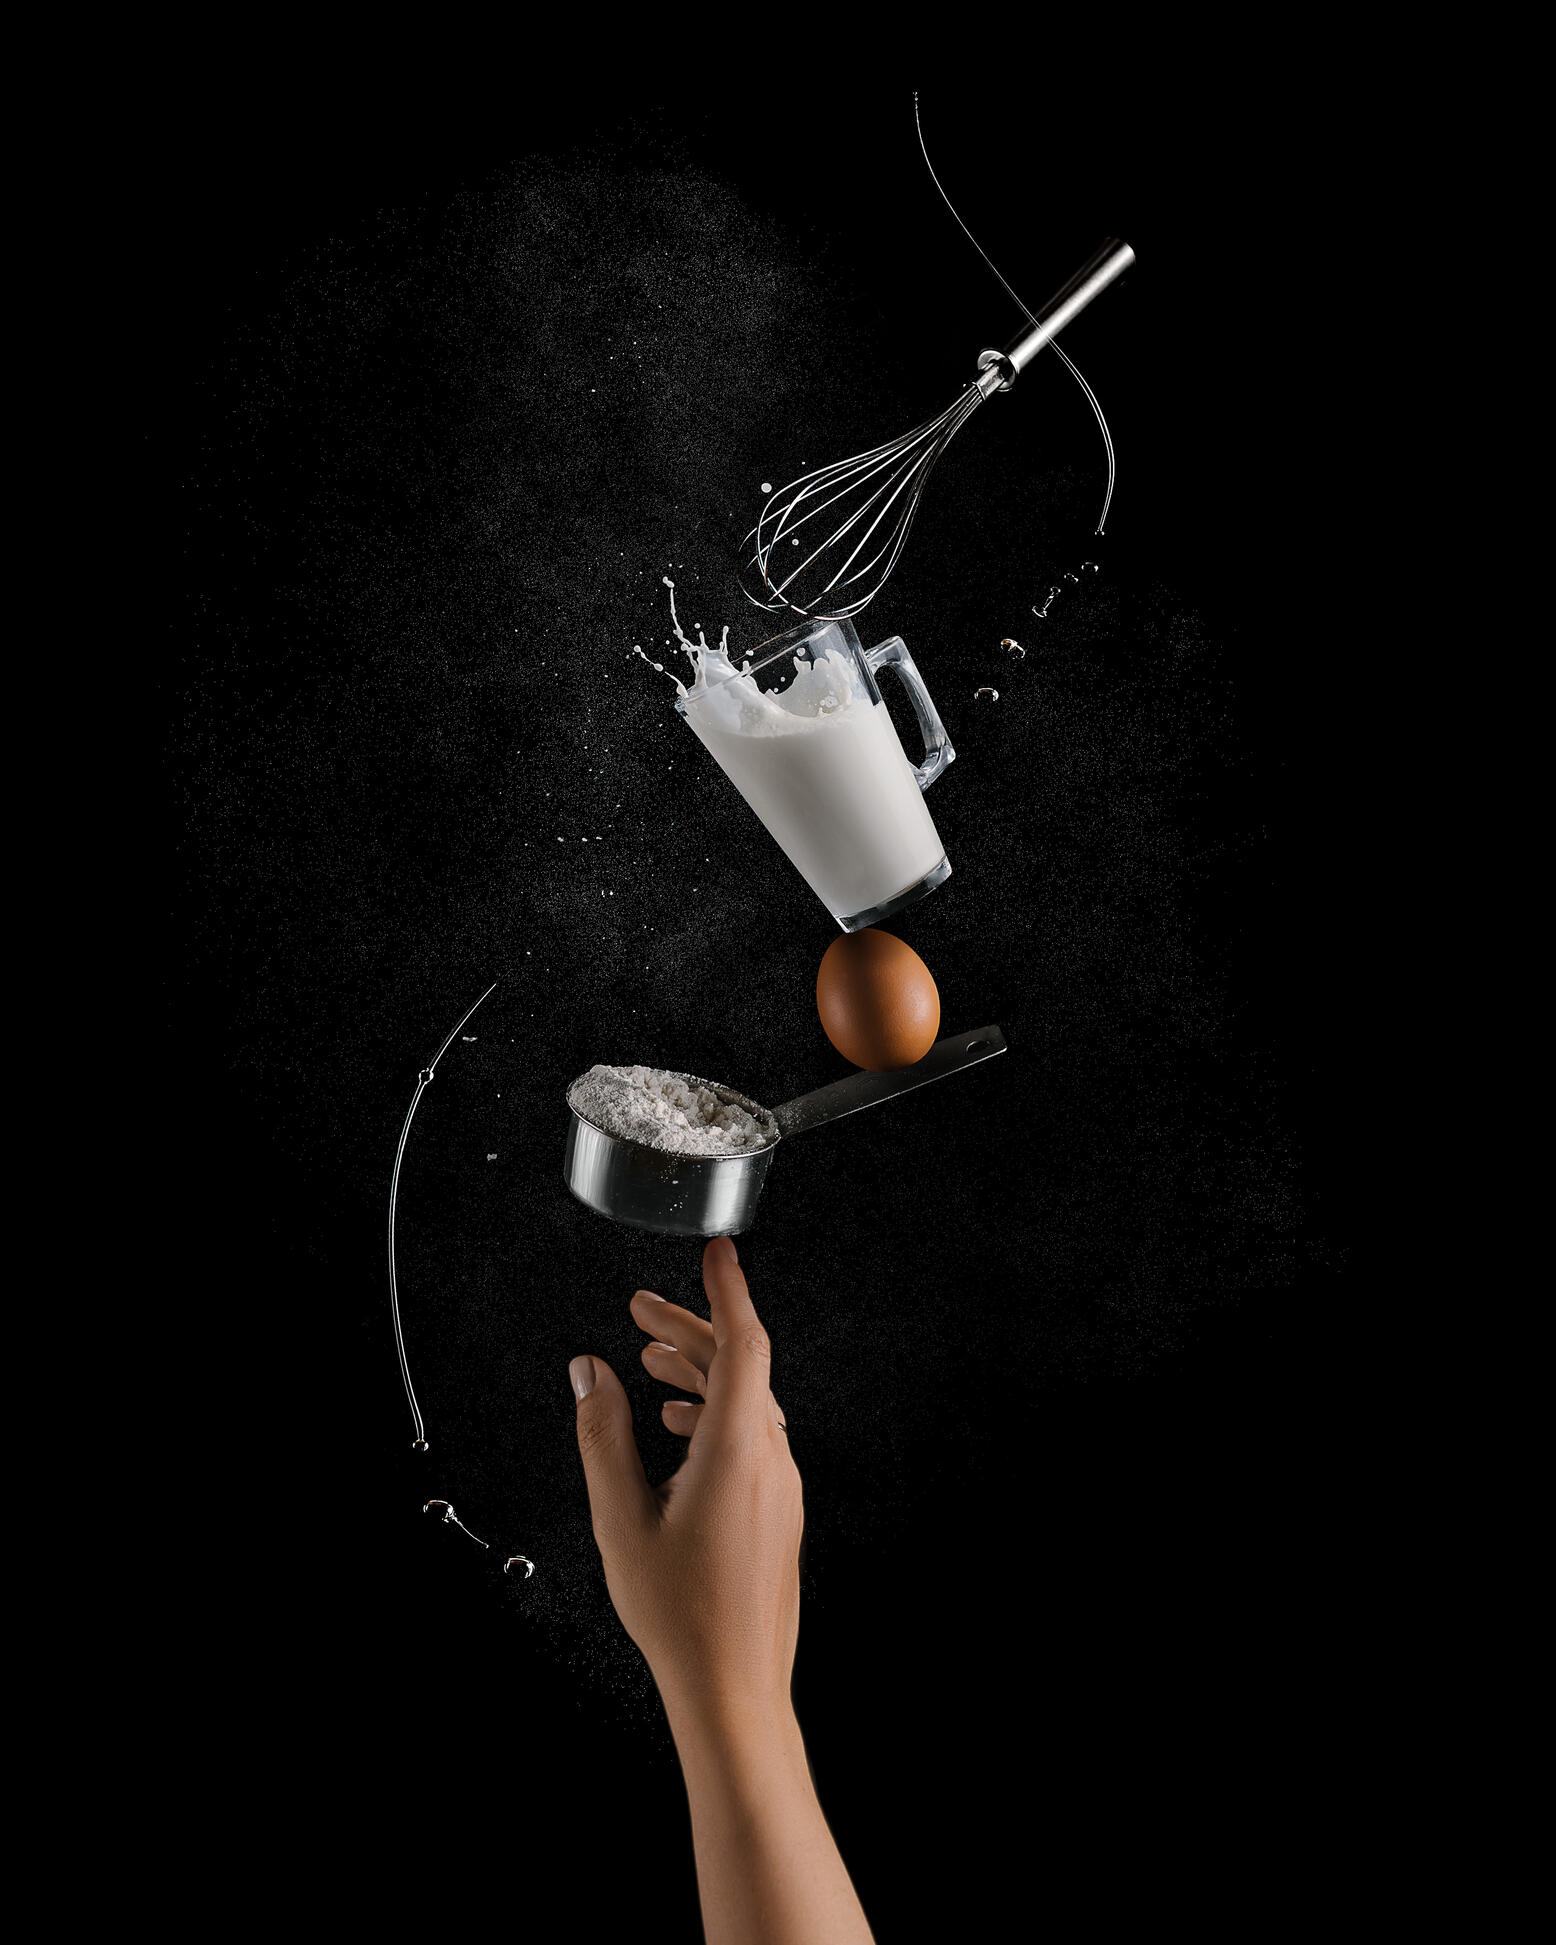 Ефектът на балансиращите продукти. Ефектът на балансиращите продукти. На снимката се вижда, че продуктите за приготвяне на палачинки са балансирани на 1 женски пръст. На пръста “стои” купа с брашно, върху нея везна яйце, а на върха на яйцето има чаша мляко, от което се излива съдържанието. Съставът се допълва от бъркалка, която стои на ръба на чаша мляко. Брашнен прах и зехтин летят около тази композиция.